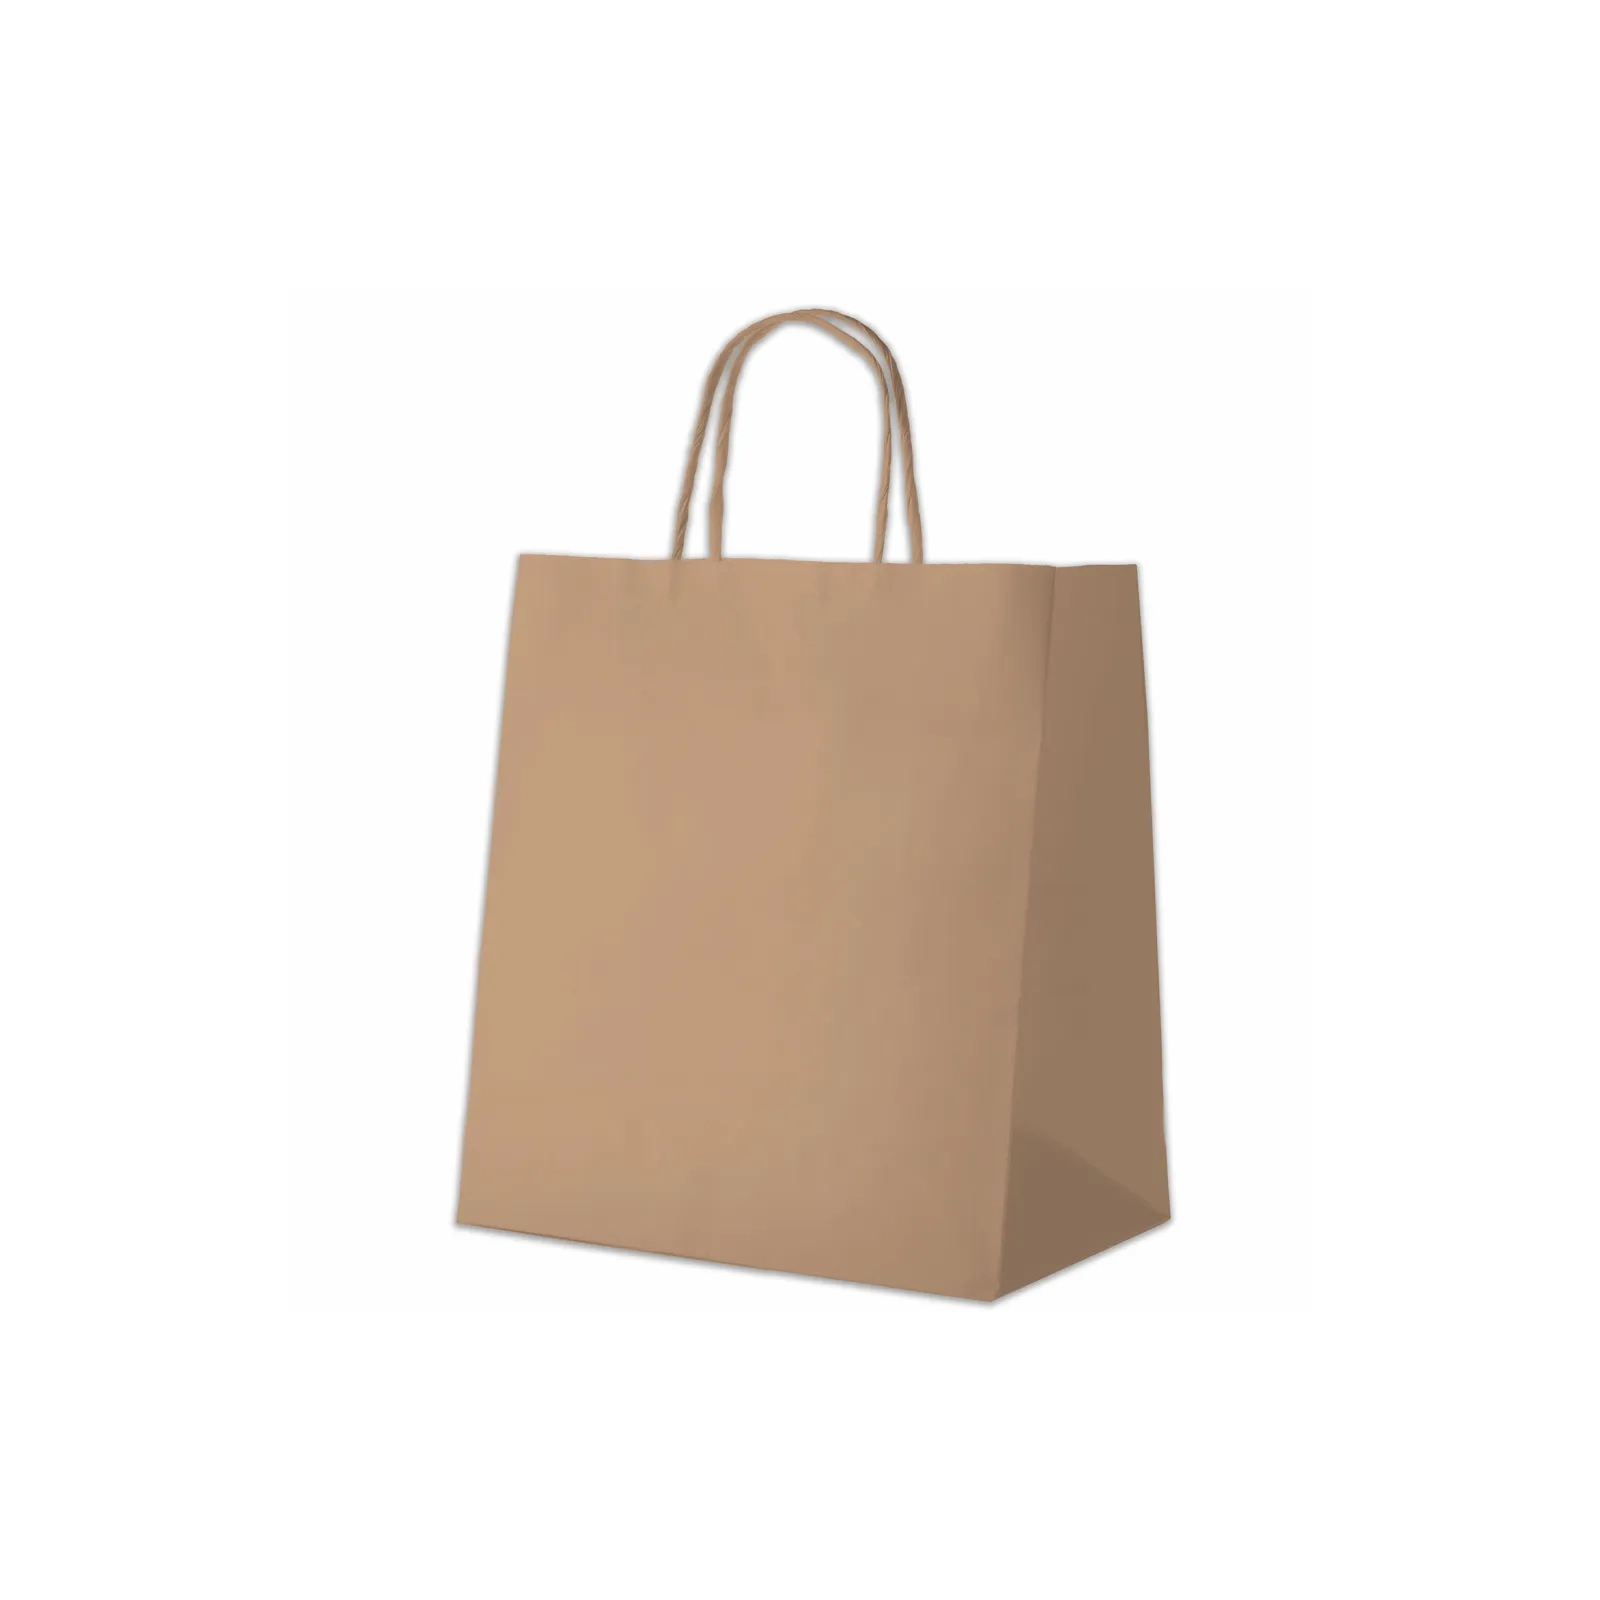 Подарочный пакет Куверт 90 Ecobag бумажный, 24х10х32 см коричневый (BAG-KUV-240100360-BR)